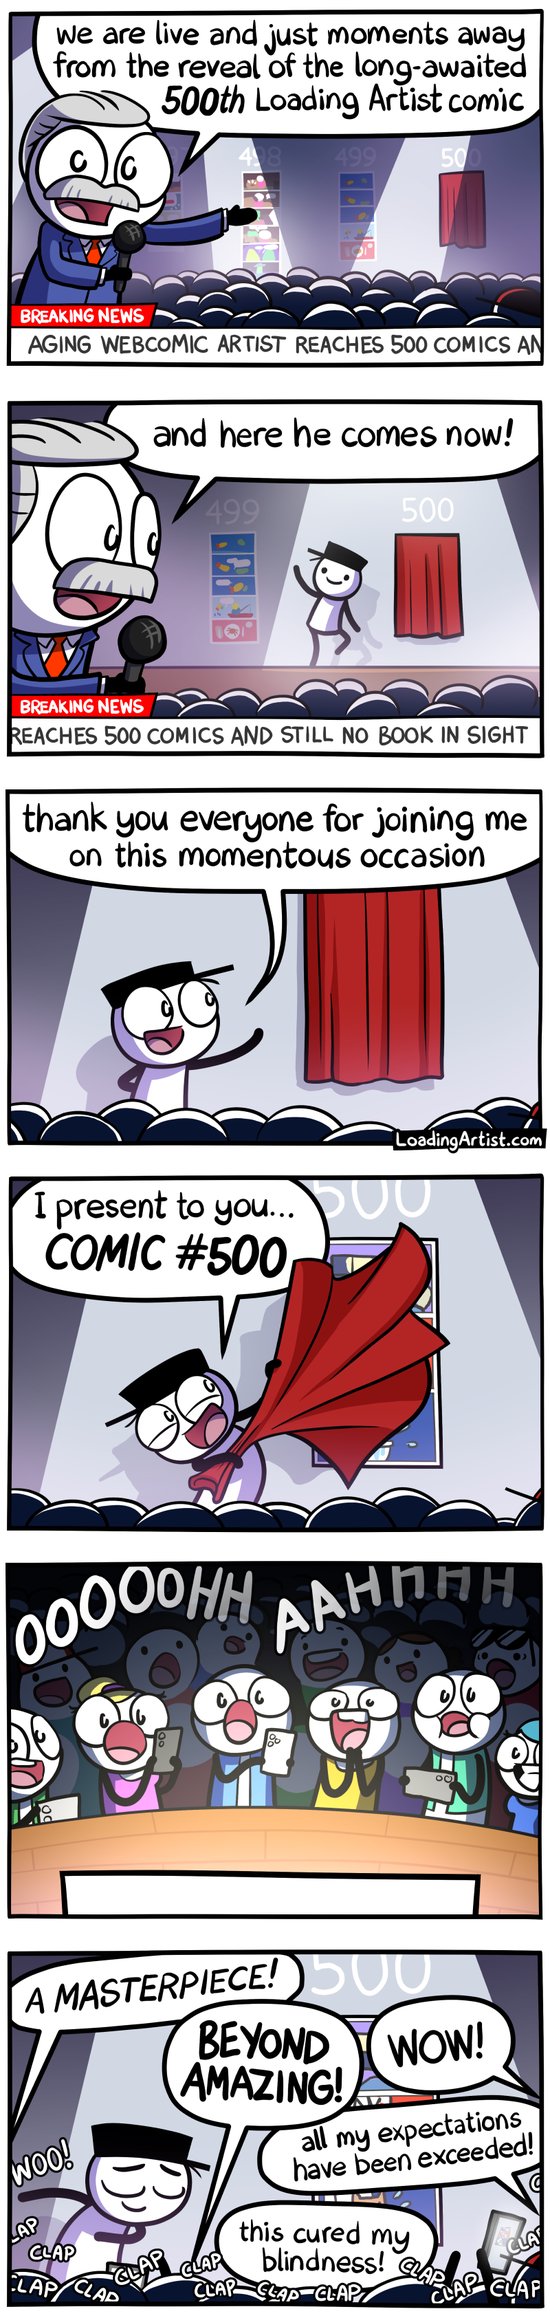 500